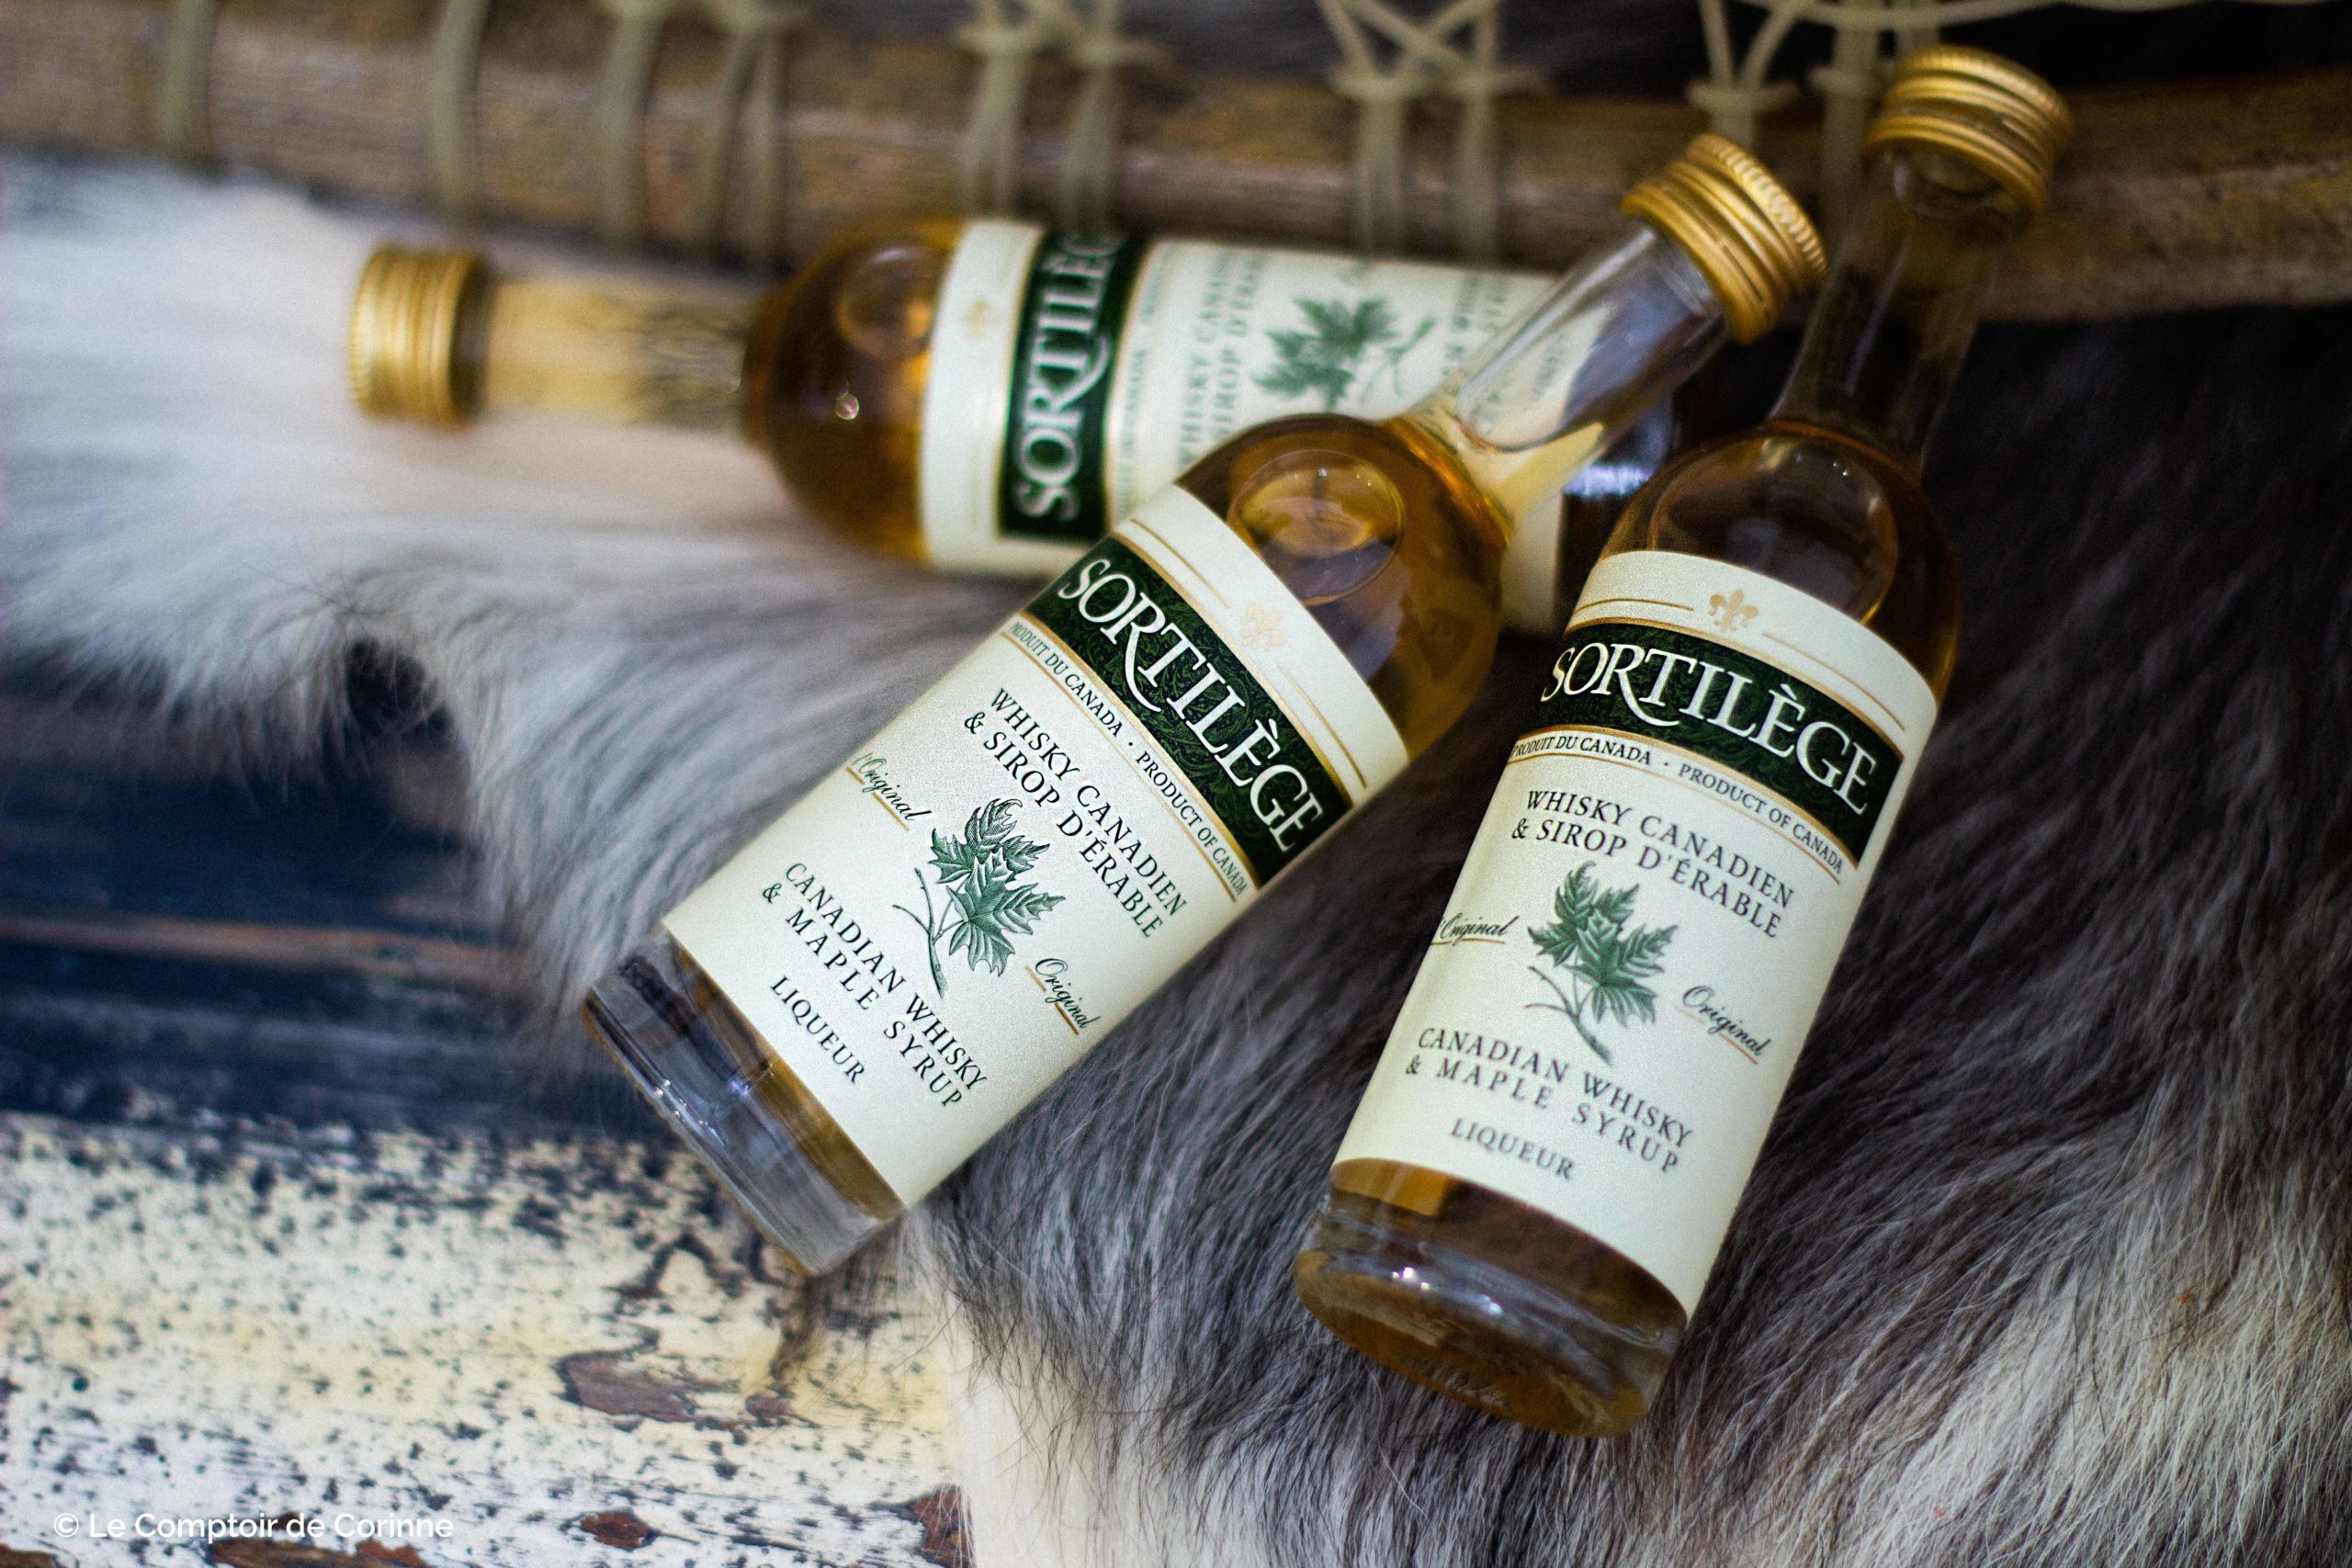 Mignonnette de whisky canadien au sirop d'érable – Sortilège